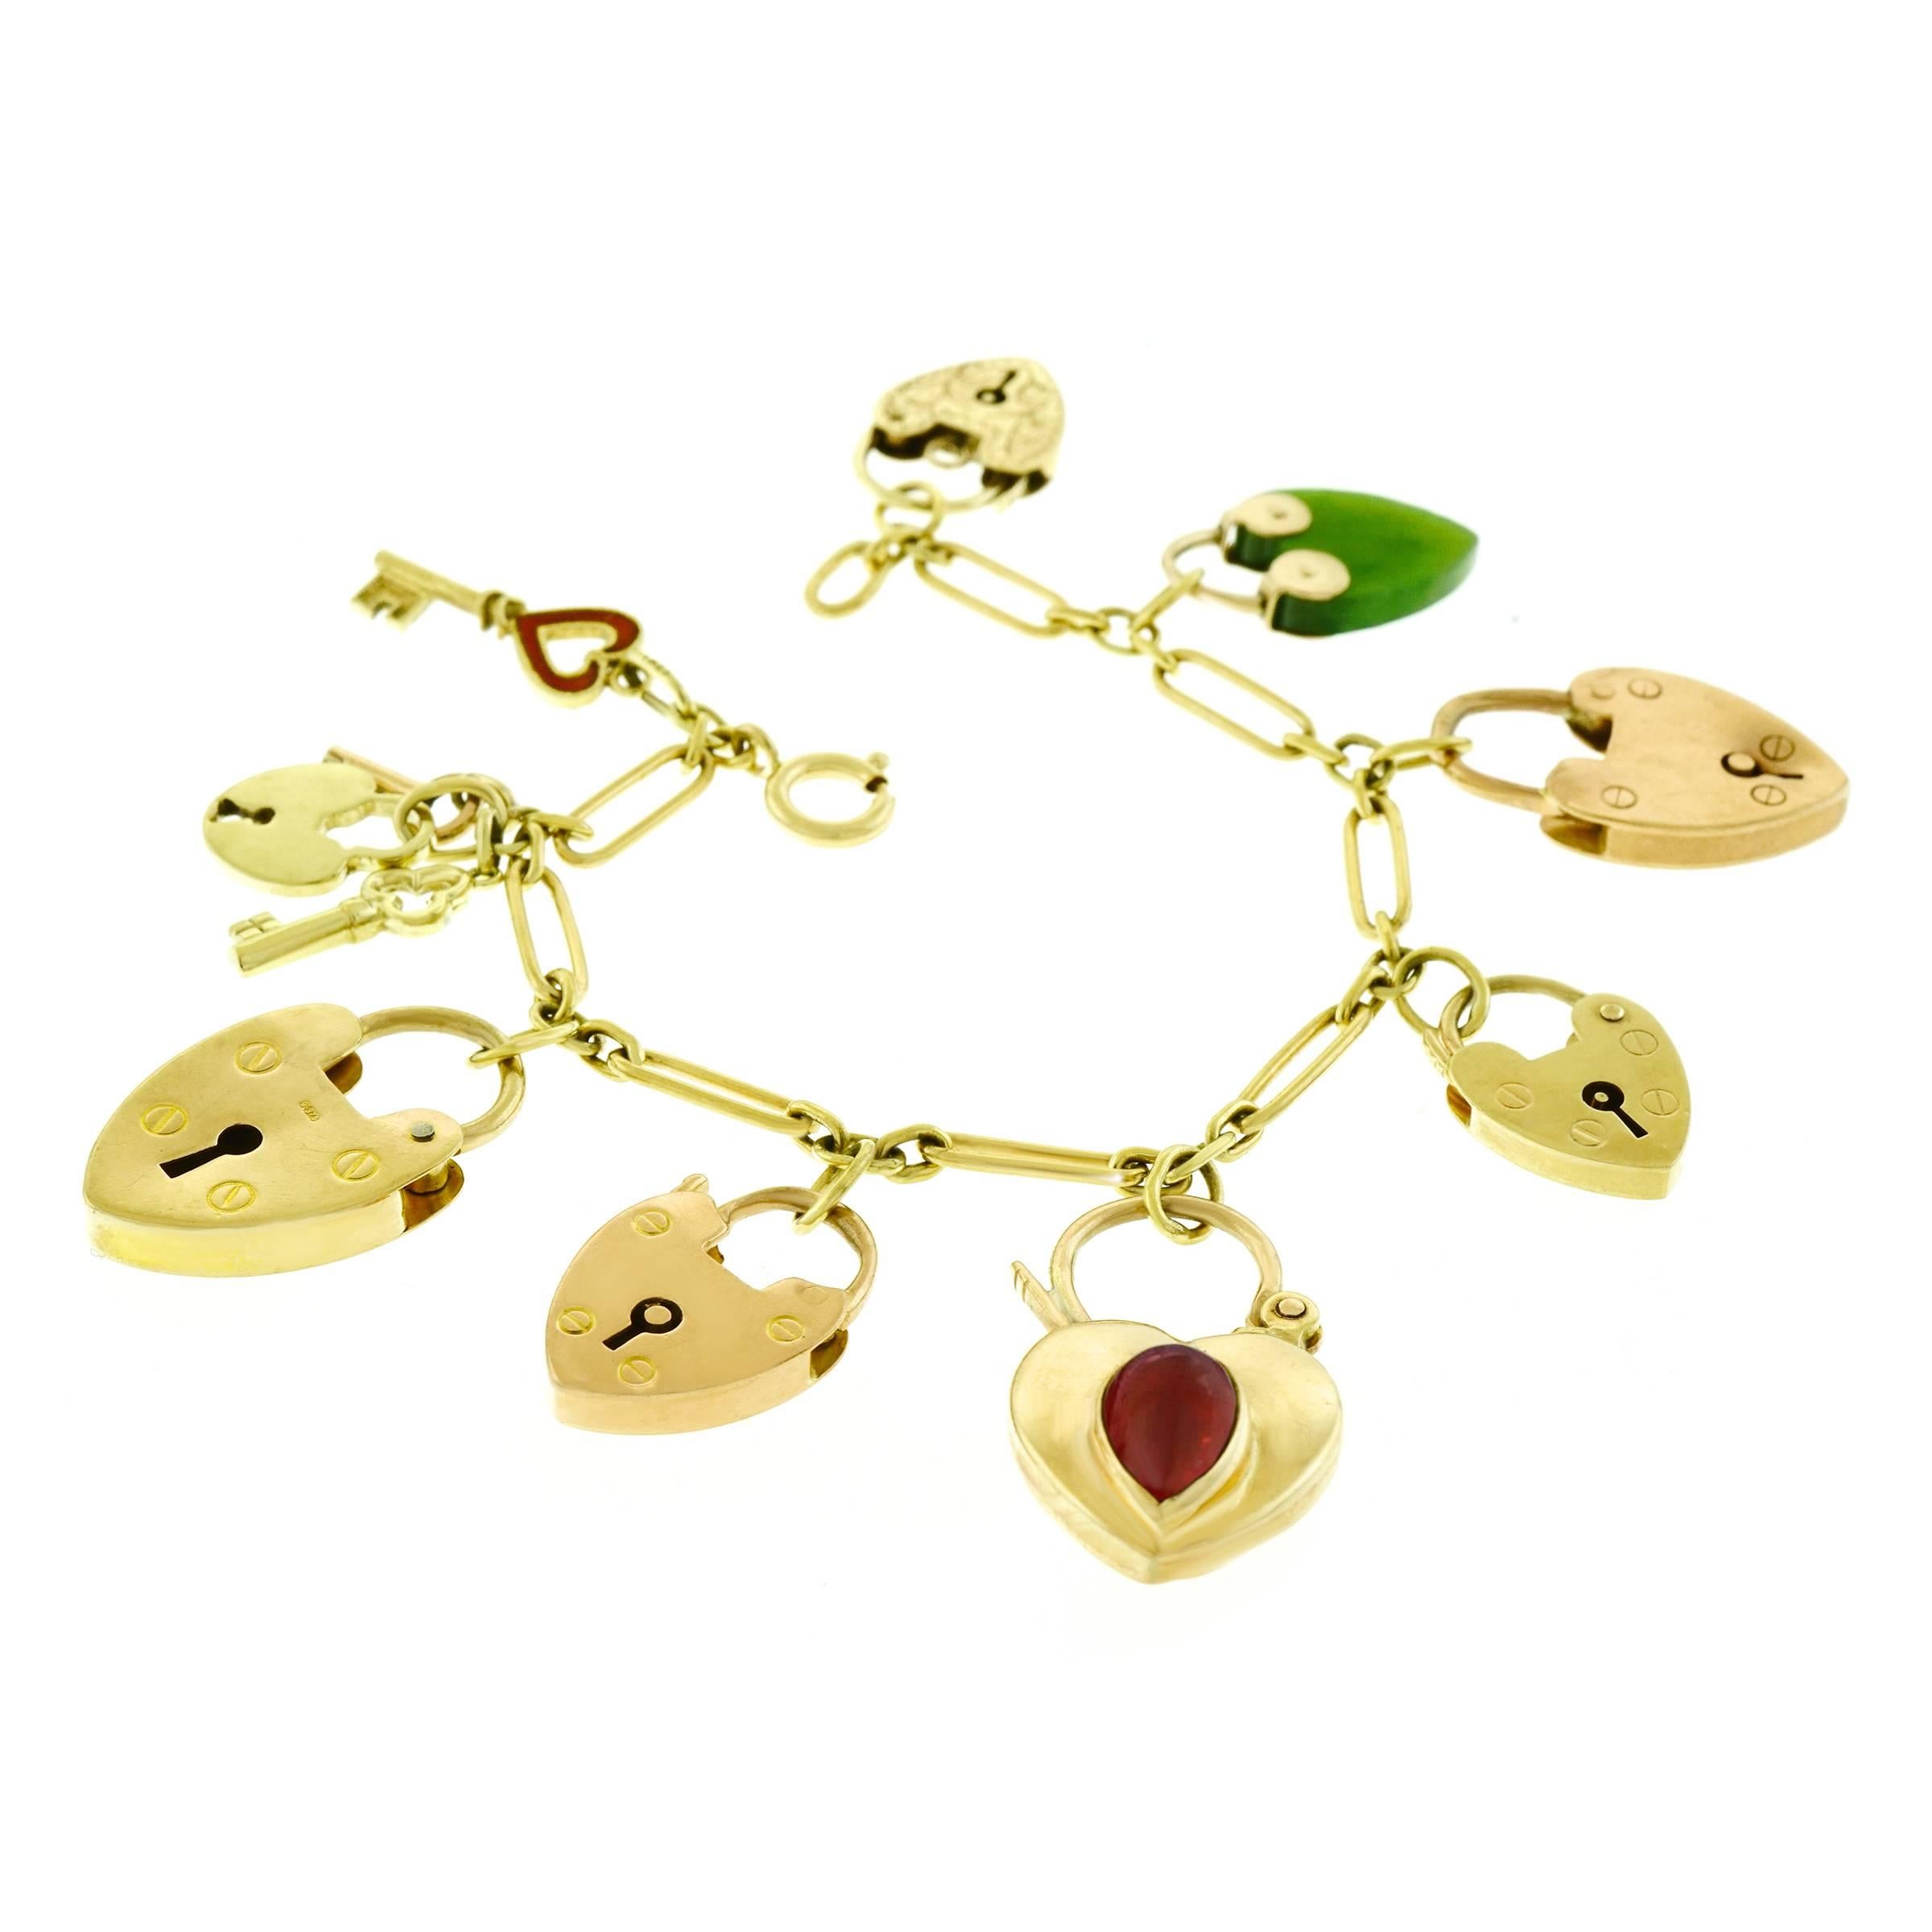 Women's or Men's Antique Heart Locks and Keys Gold Charm Bracelet